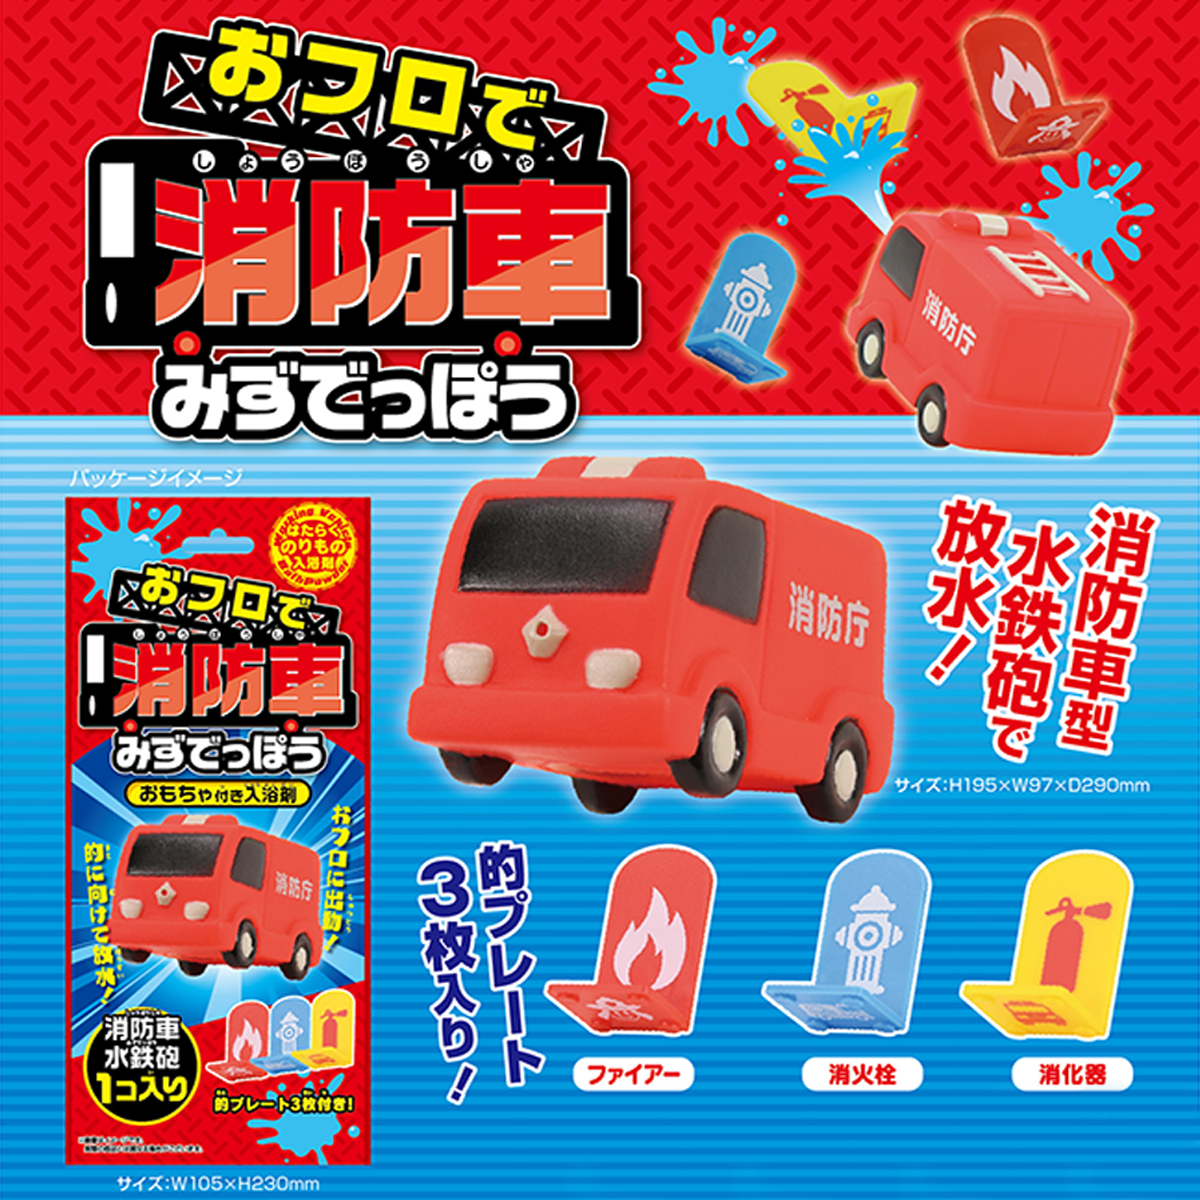 【パイレーツファクトリー】おフロで消防車 みずでっぽう おもちゃ付き入浴剤